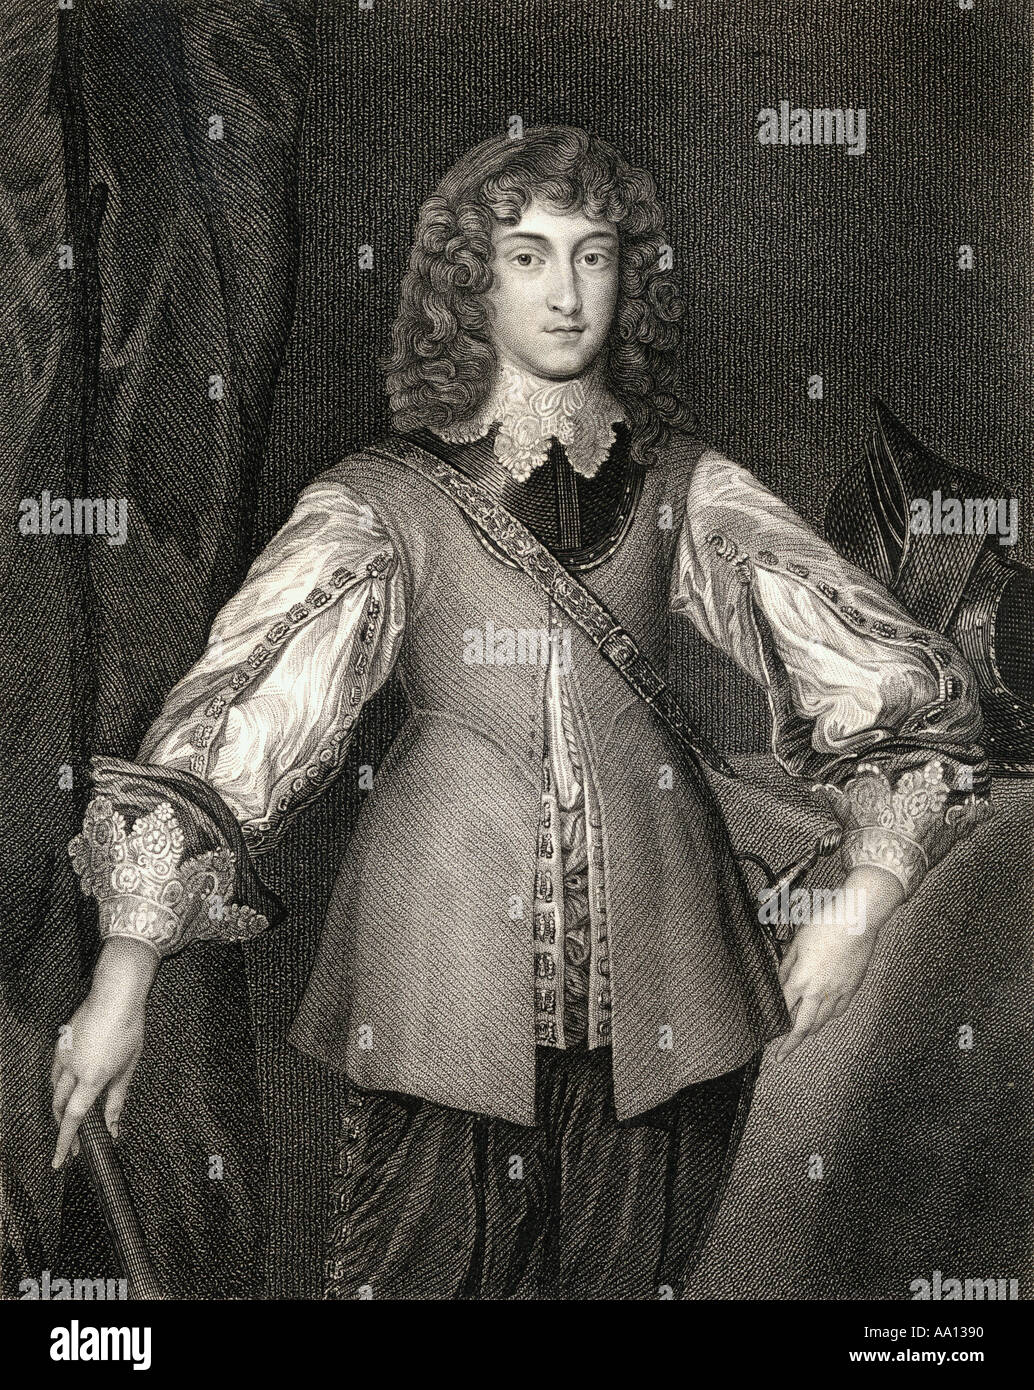 Prince Rupert del Reno, il duca di Cumberland, 1619 - 1682. Soldato tedesco, Admiral, scienziato, sportivo, governatore coloniale e disegnatore dilettante Foto Stock